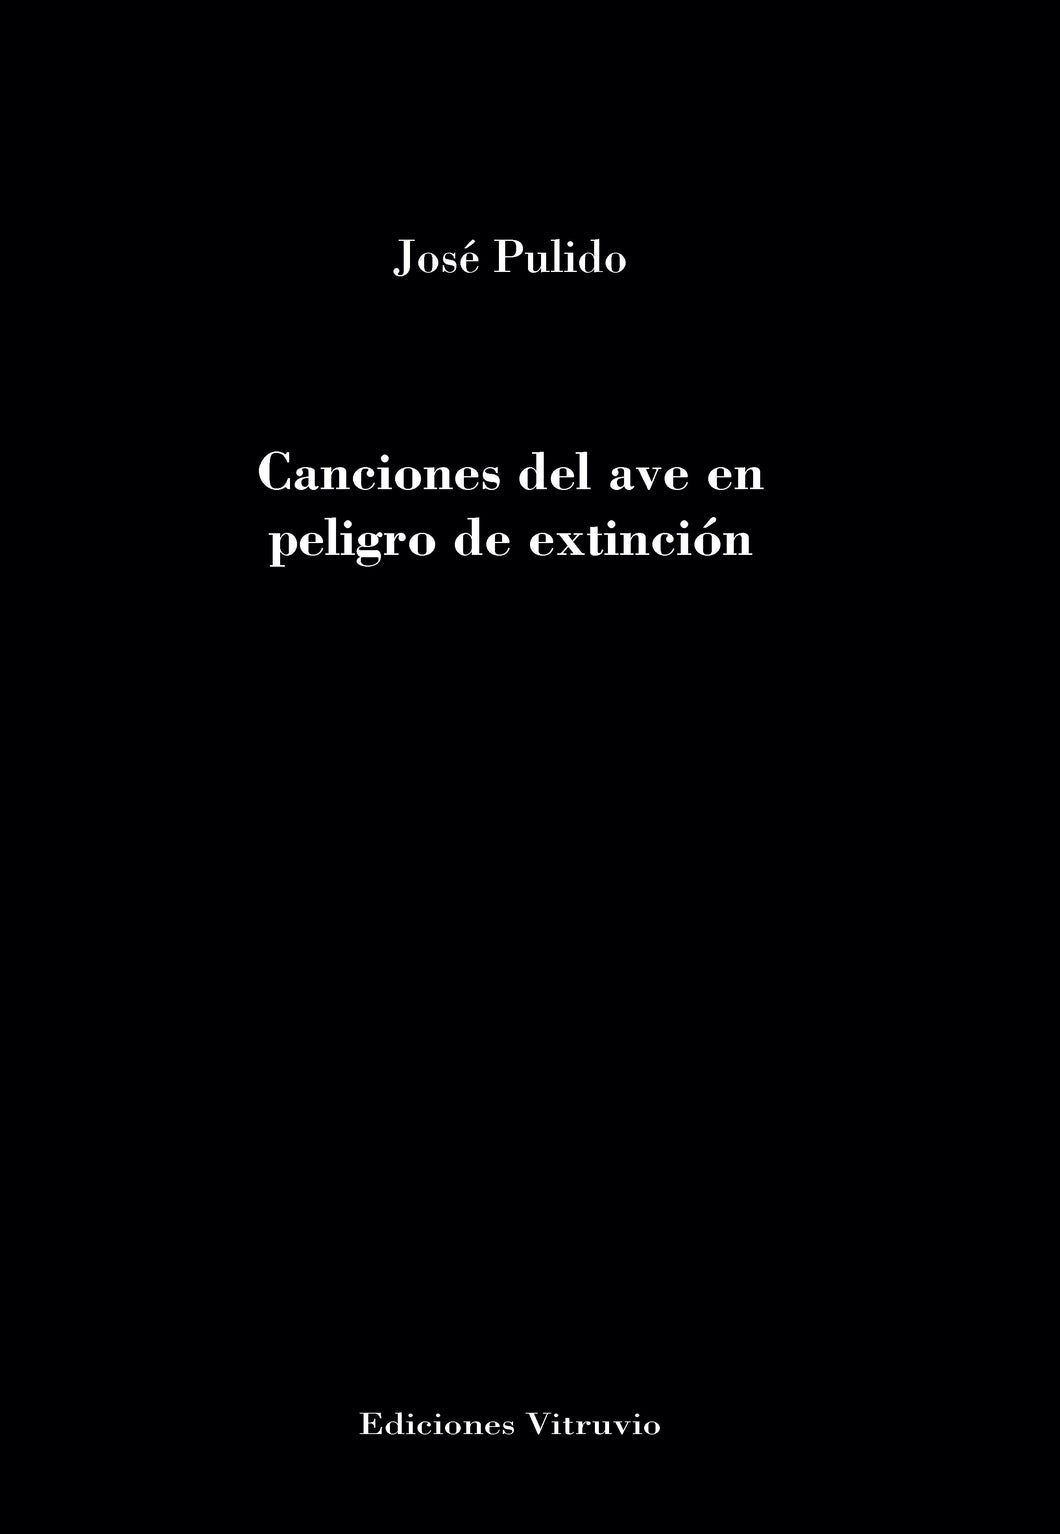 Canciones del ave en peligro de extinción, de José Pulido